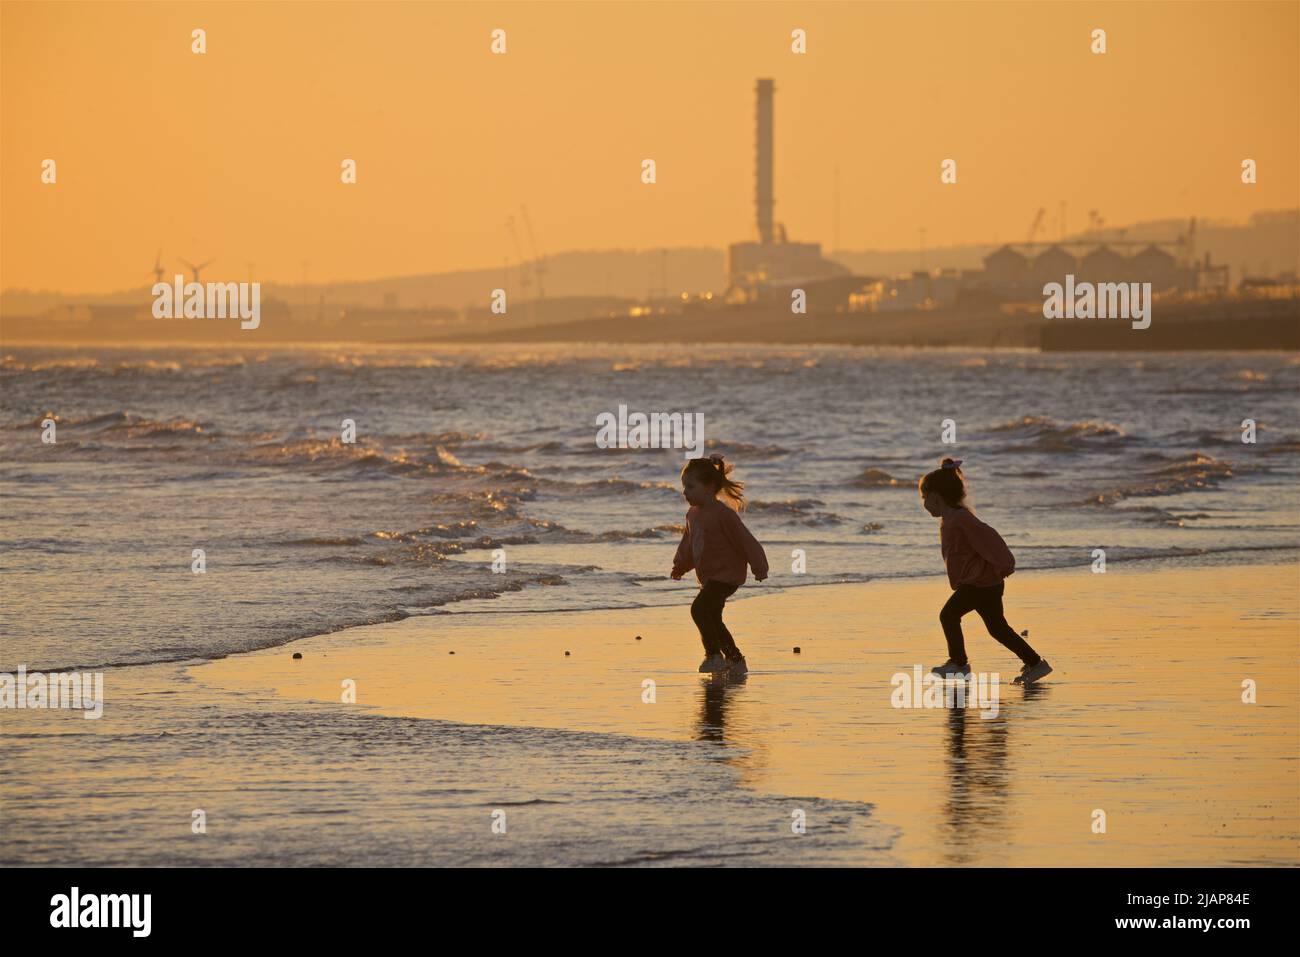 Deux jeunes filles marchant le long du rivage à marée basse, Brighton, Sussex, Angleterre, Royaume-Uni. Coucher de soleil / crépuscule. Shoreham Power Station en arrière-plan. Banque D'Images